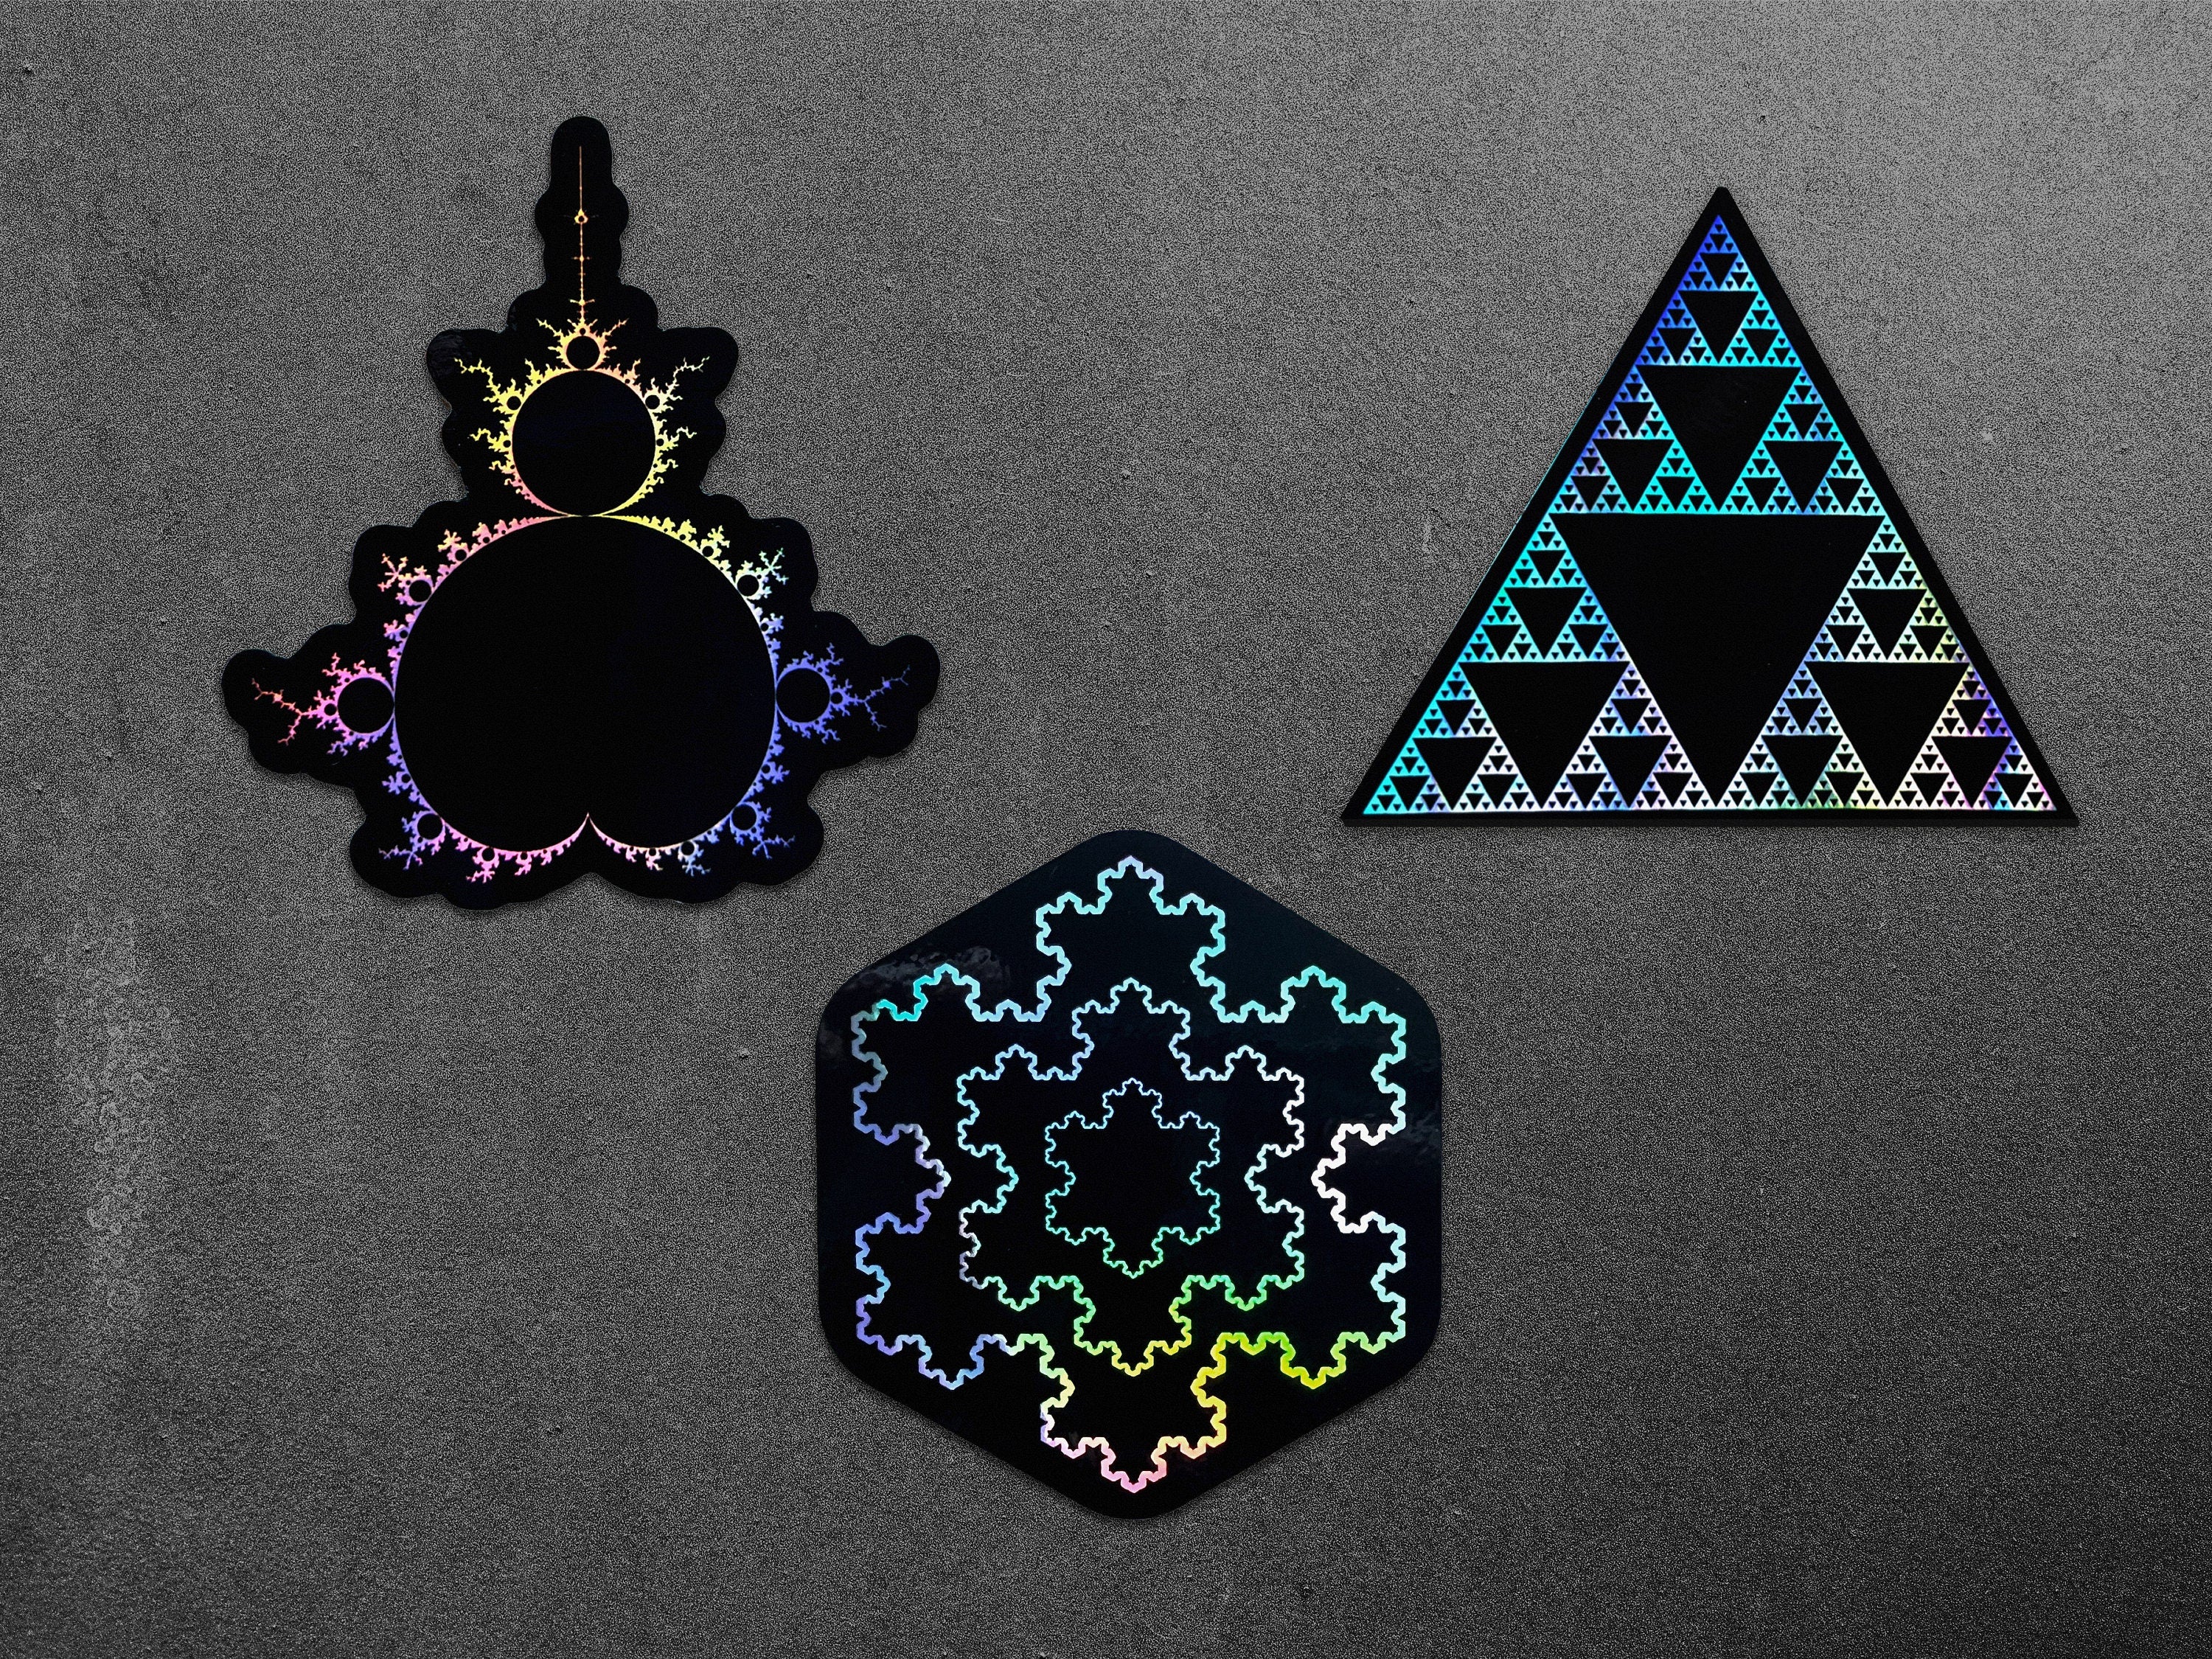 Cyberpunk Sierpiński Triangle, Mandelbrot, Koch Snowflake fractal vinyl sticker decals by The Sciencey